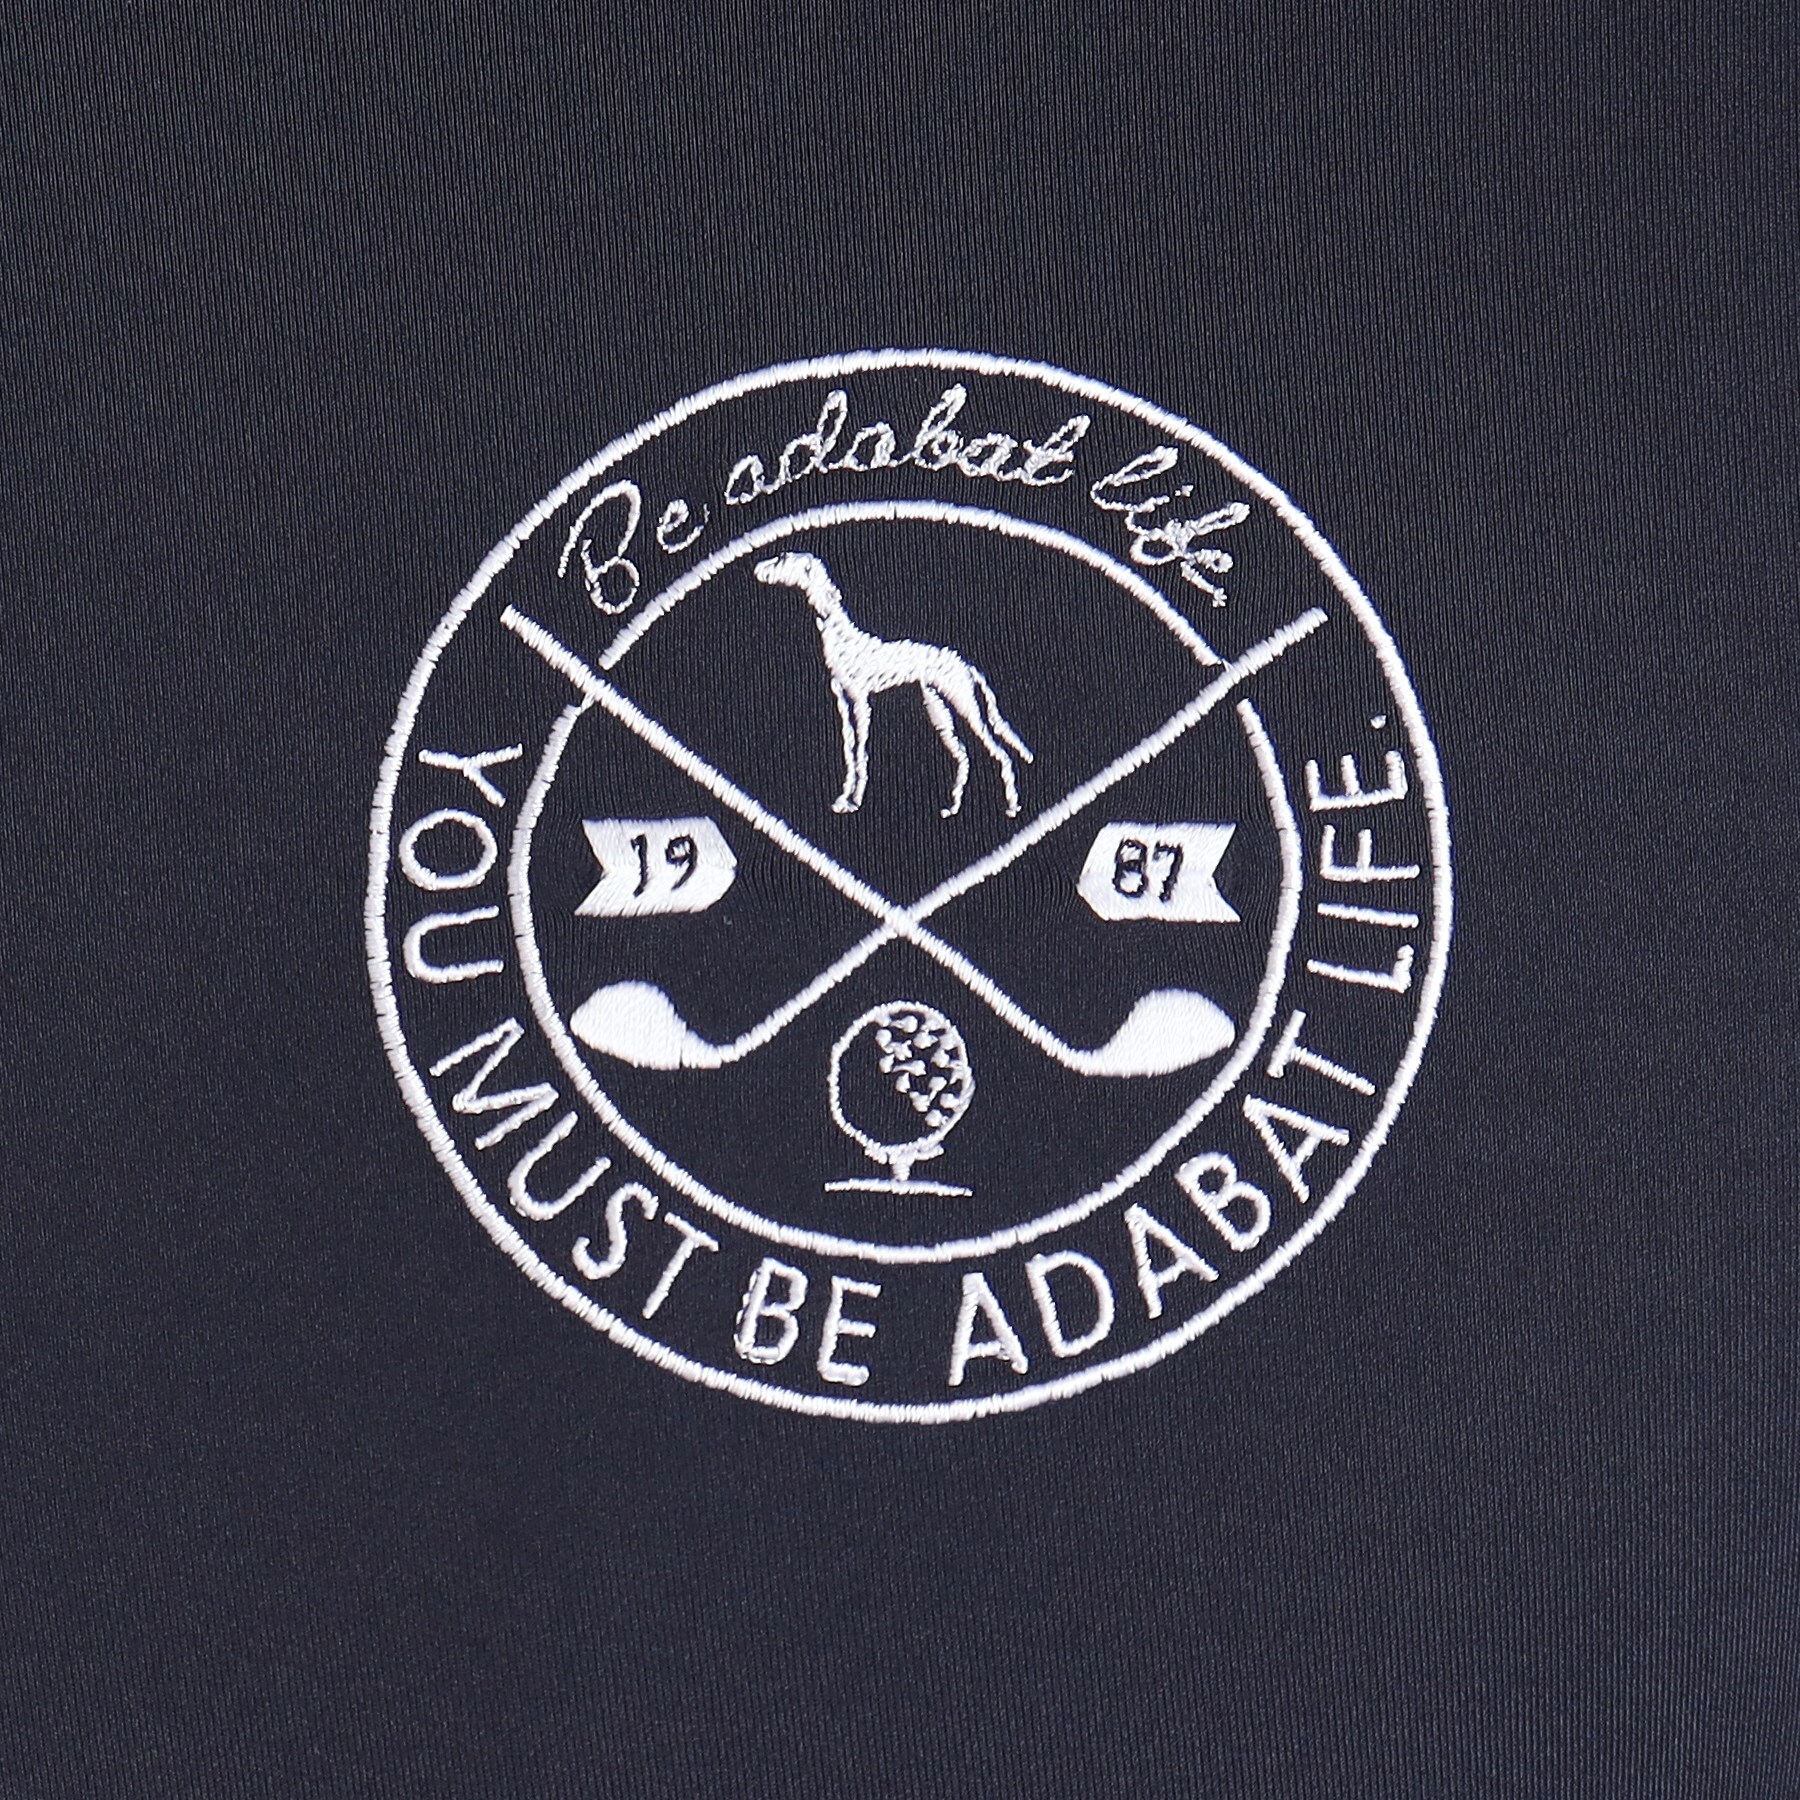 アダバット(メンズ)(adabat(Men))のロゴデザイン 長袖ハーフジッププルオーバー10